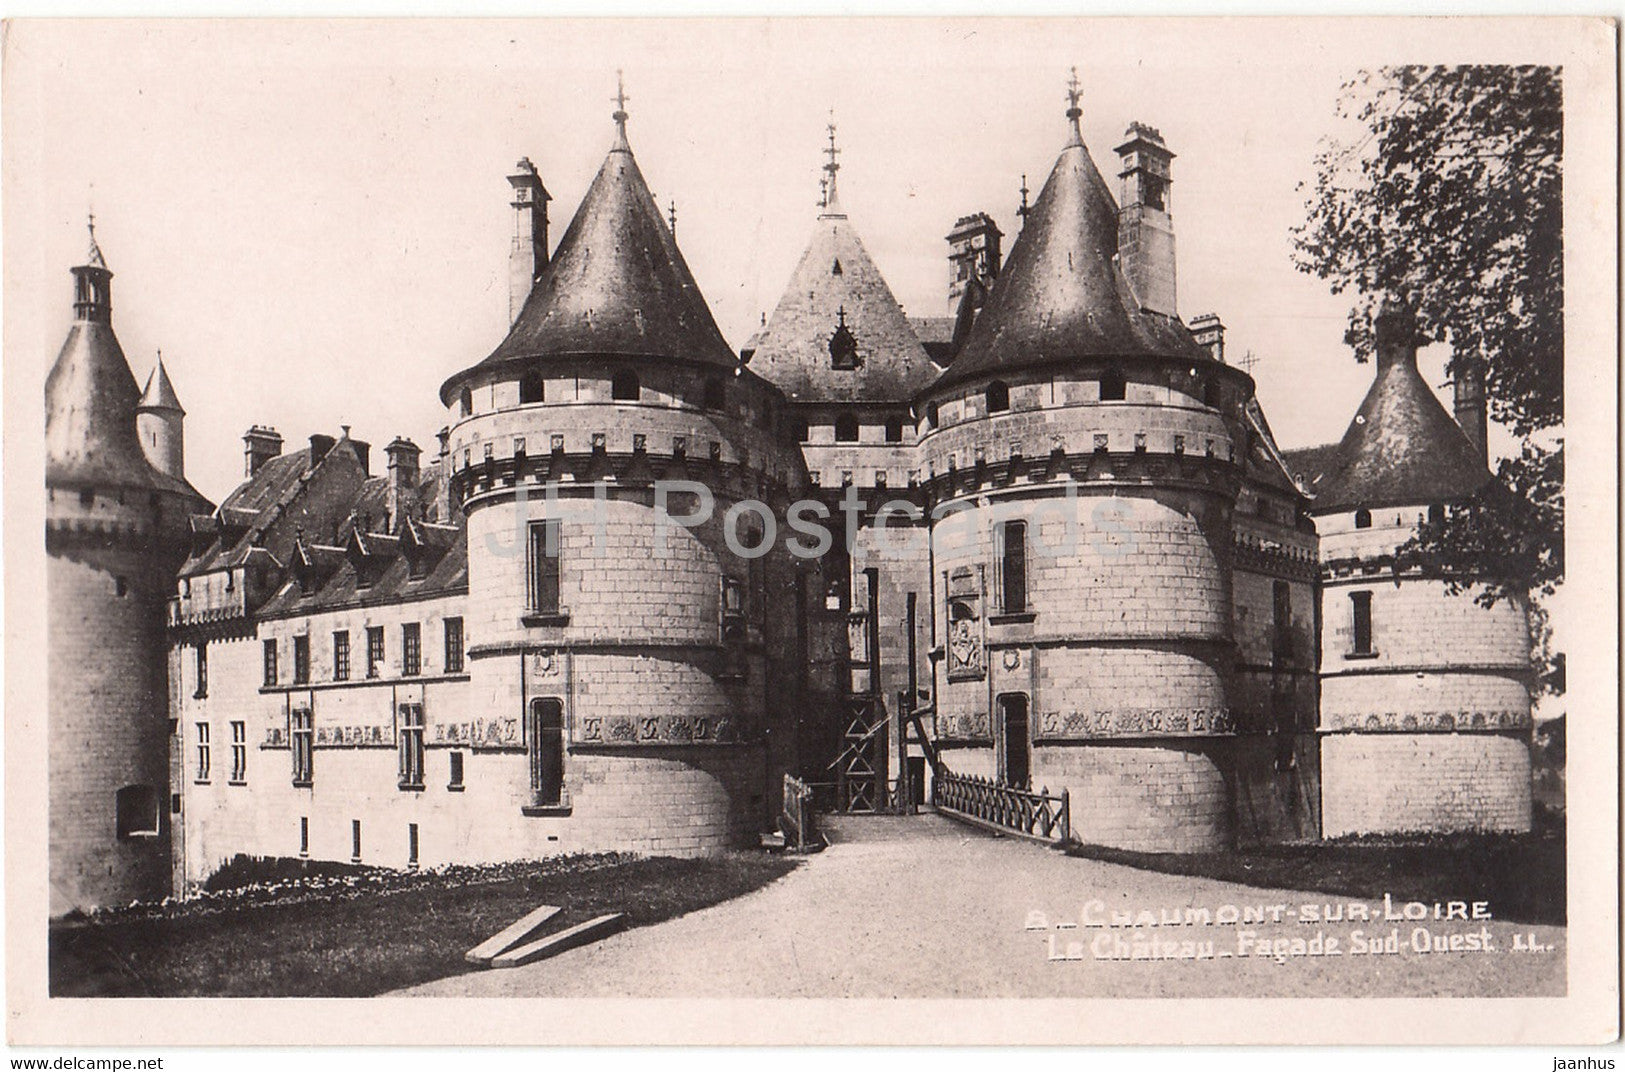 Chaumont sur Loire - Le Chateau - Facade Sud Ouest - old postcard - France - unused - JH Postcards